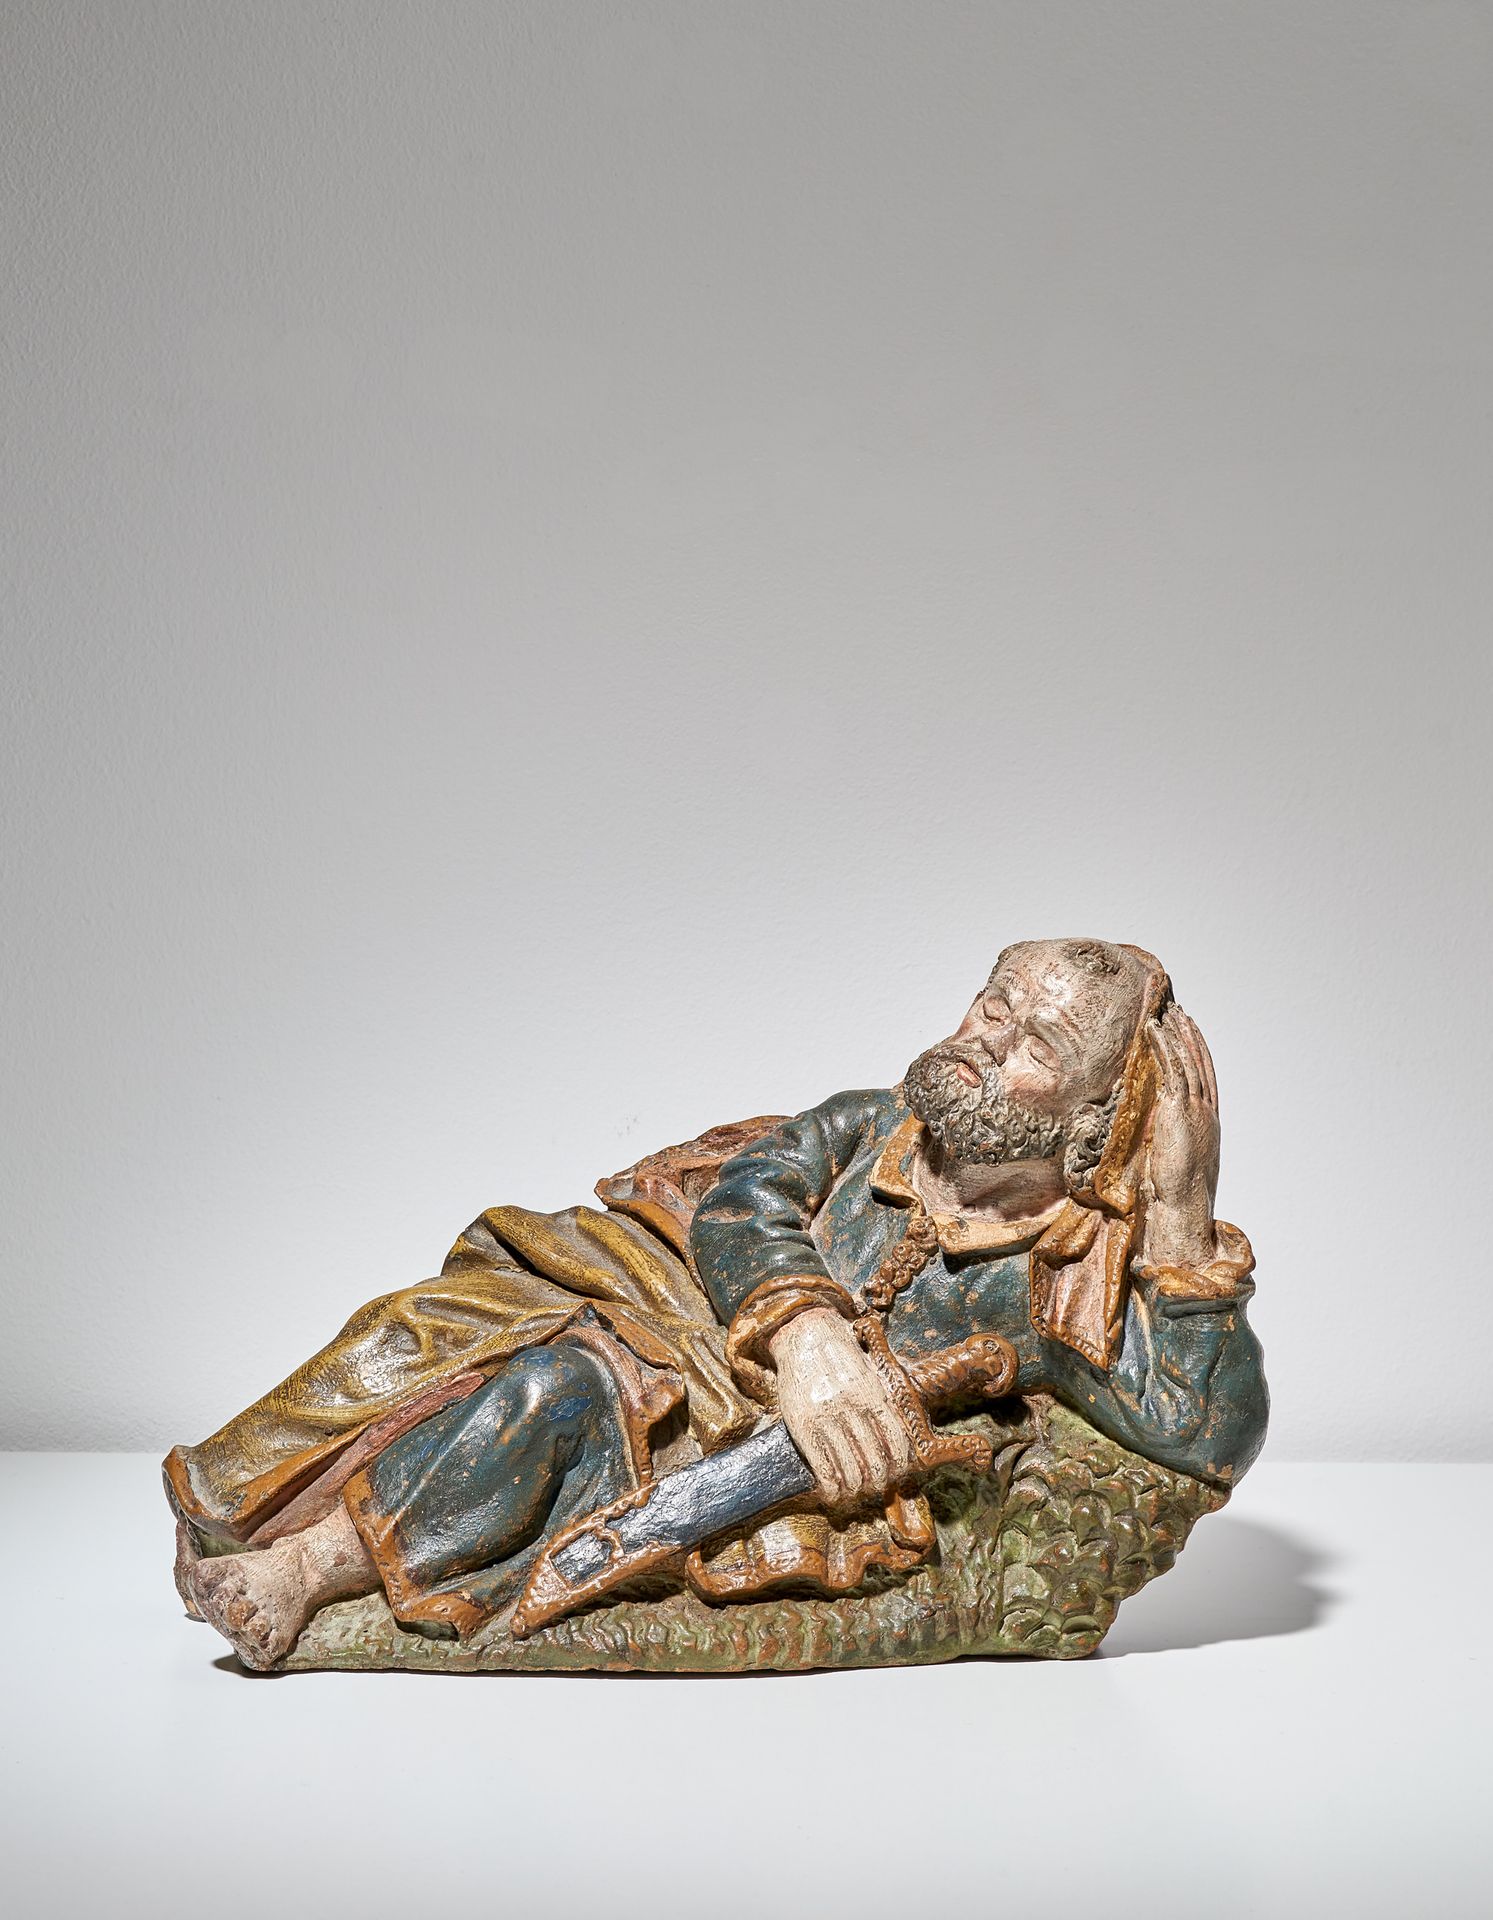 Null SAN PEDRO DURMIENDO

Flandes, 1649 

En terracota policromada, con el monog&hellip;